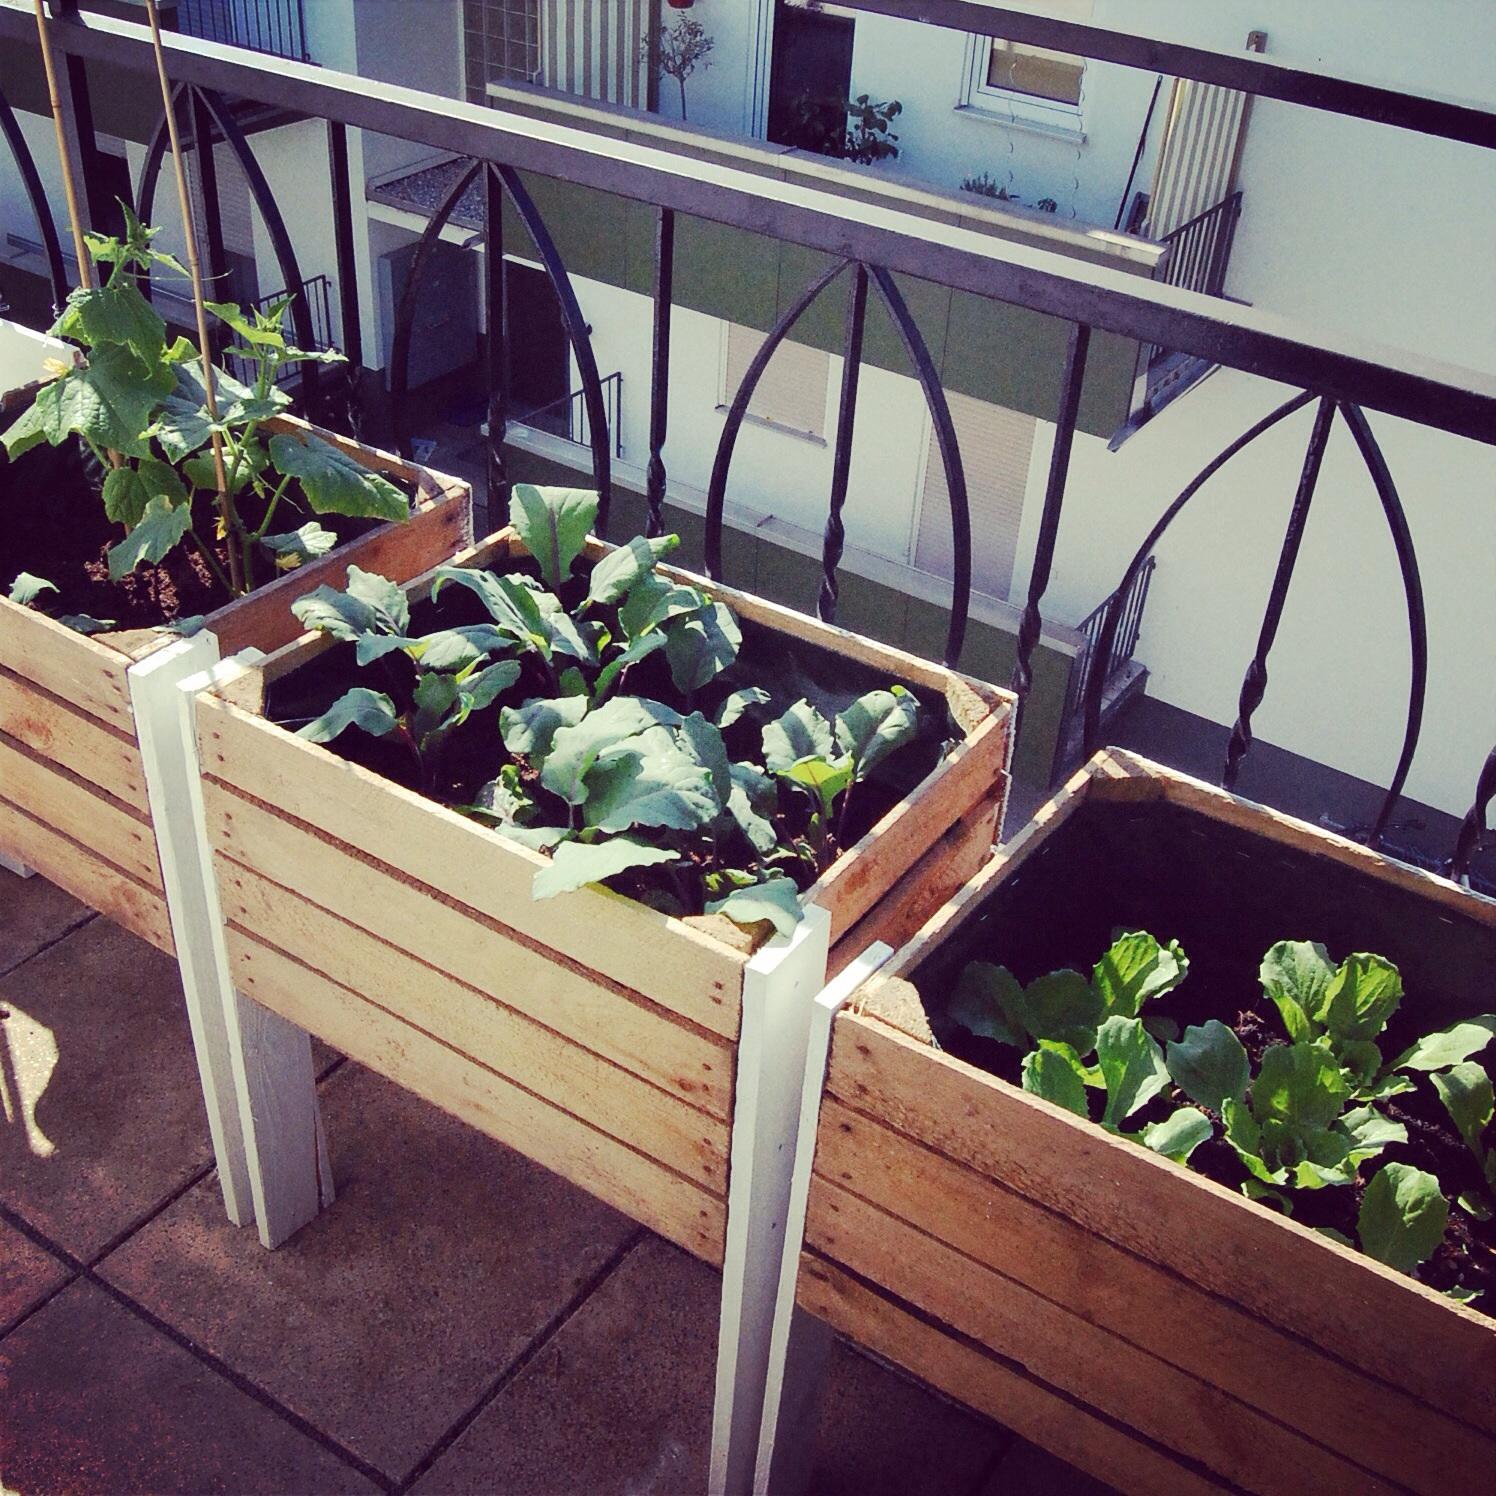 Alte Kiste mit jungem Gemüse - urban gardening #urbangardening ©stadt.bude, Kristin Engel